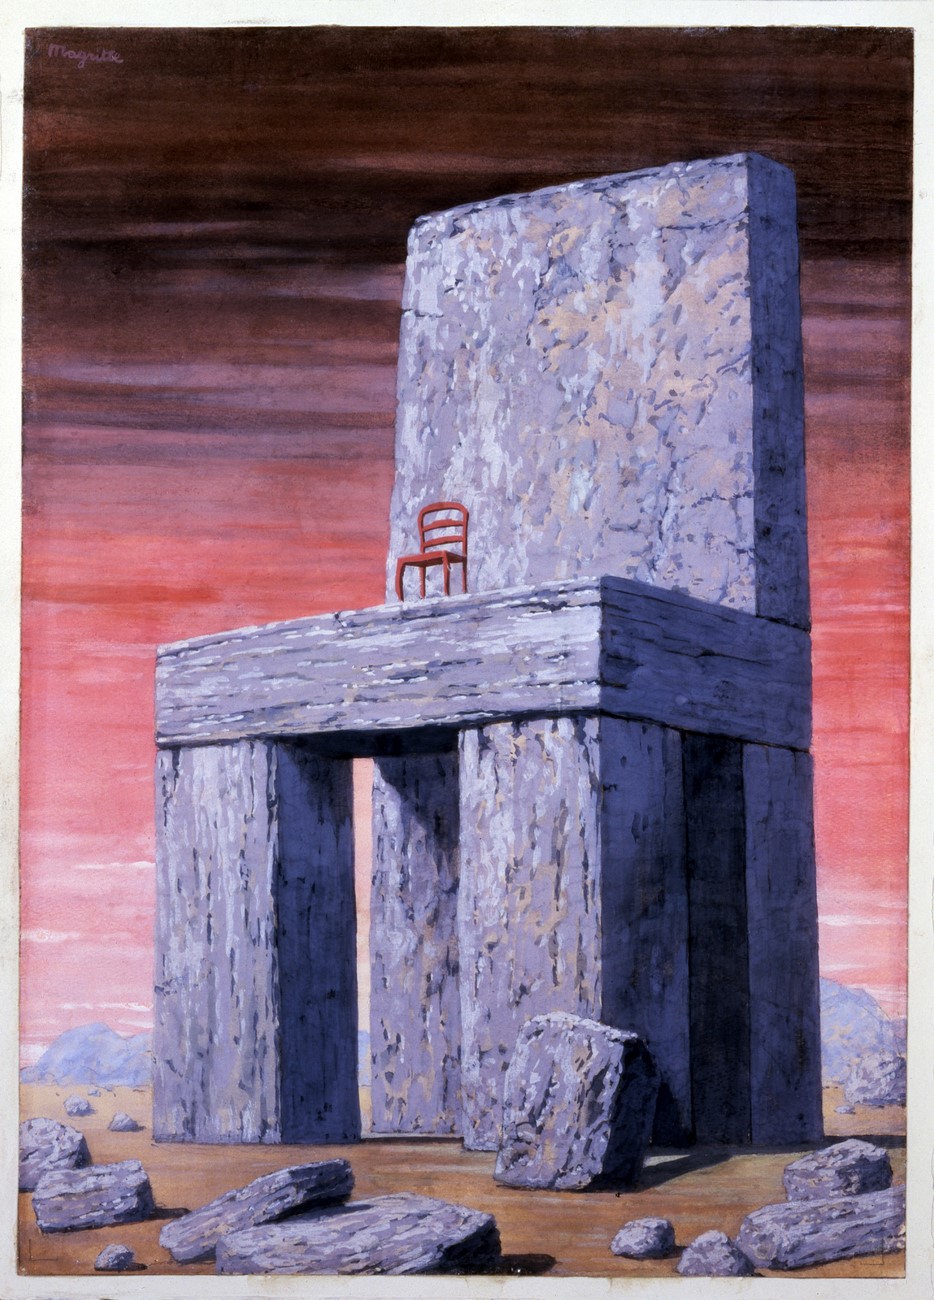 Σύκο.. 10 - Rene Magritte, «Ποιος δεν μπορεί να θυμηθεί το παρελθόν είναι καταδικασμένοι να το επαναλάβω» - George Santayana, Λόγος ζωής; 1905, σειρά: Μεγάλες Ιδέες της Δυτικής Man. 1962; γκουάς και μολύβι σε χαρτί χαρτόνι. 34.0 x 24.2 cm, Αμερικανικό Μουσείο Τέχνης Σμιθσόνιαν, Να παρουσιάζονται de Container Corporation of America, 1984.124.194 .